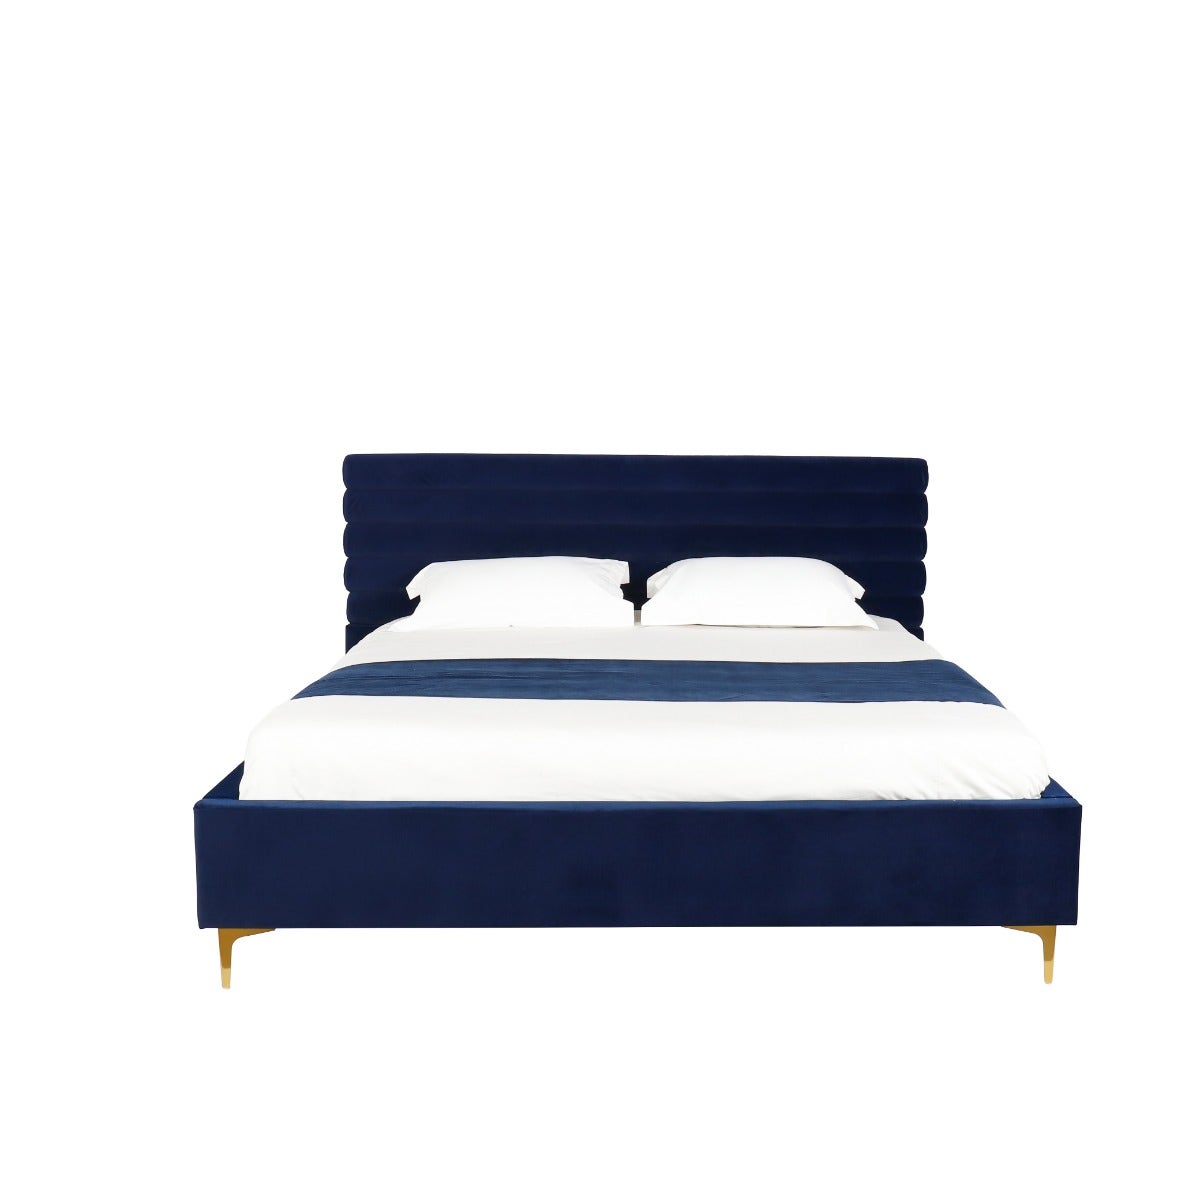 เตียง 6 ฟุต รุ่น CREER สีน้ำเงิน01